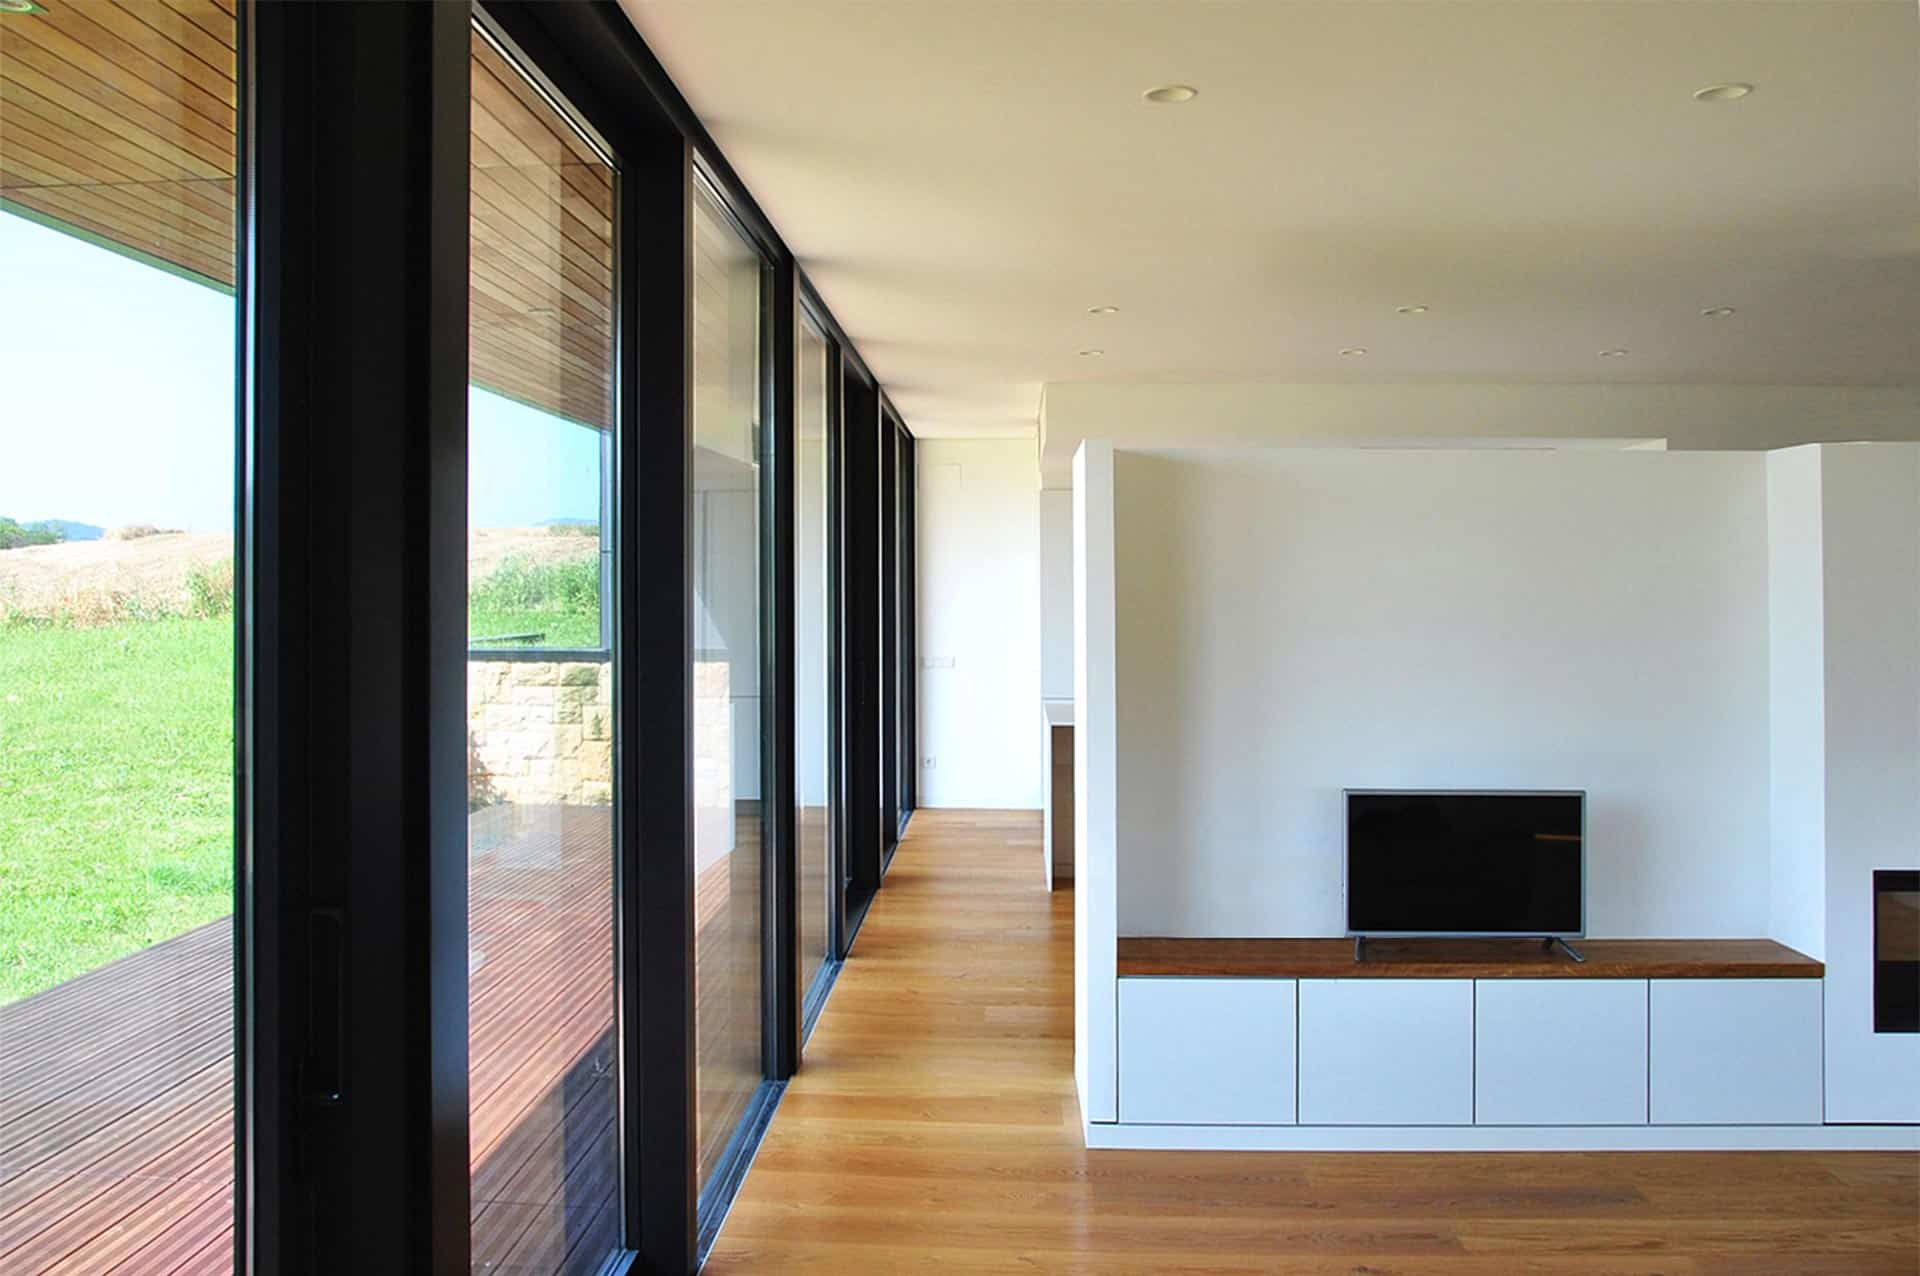 Salón en casa moderna diseñada por Moah Arquitectos en Cantabria